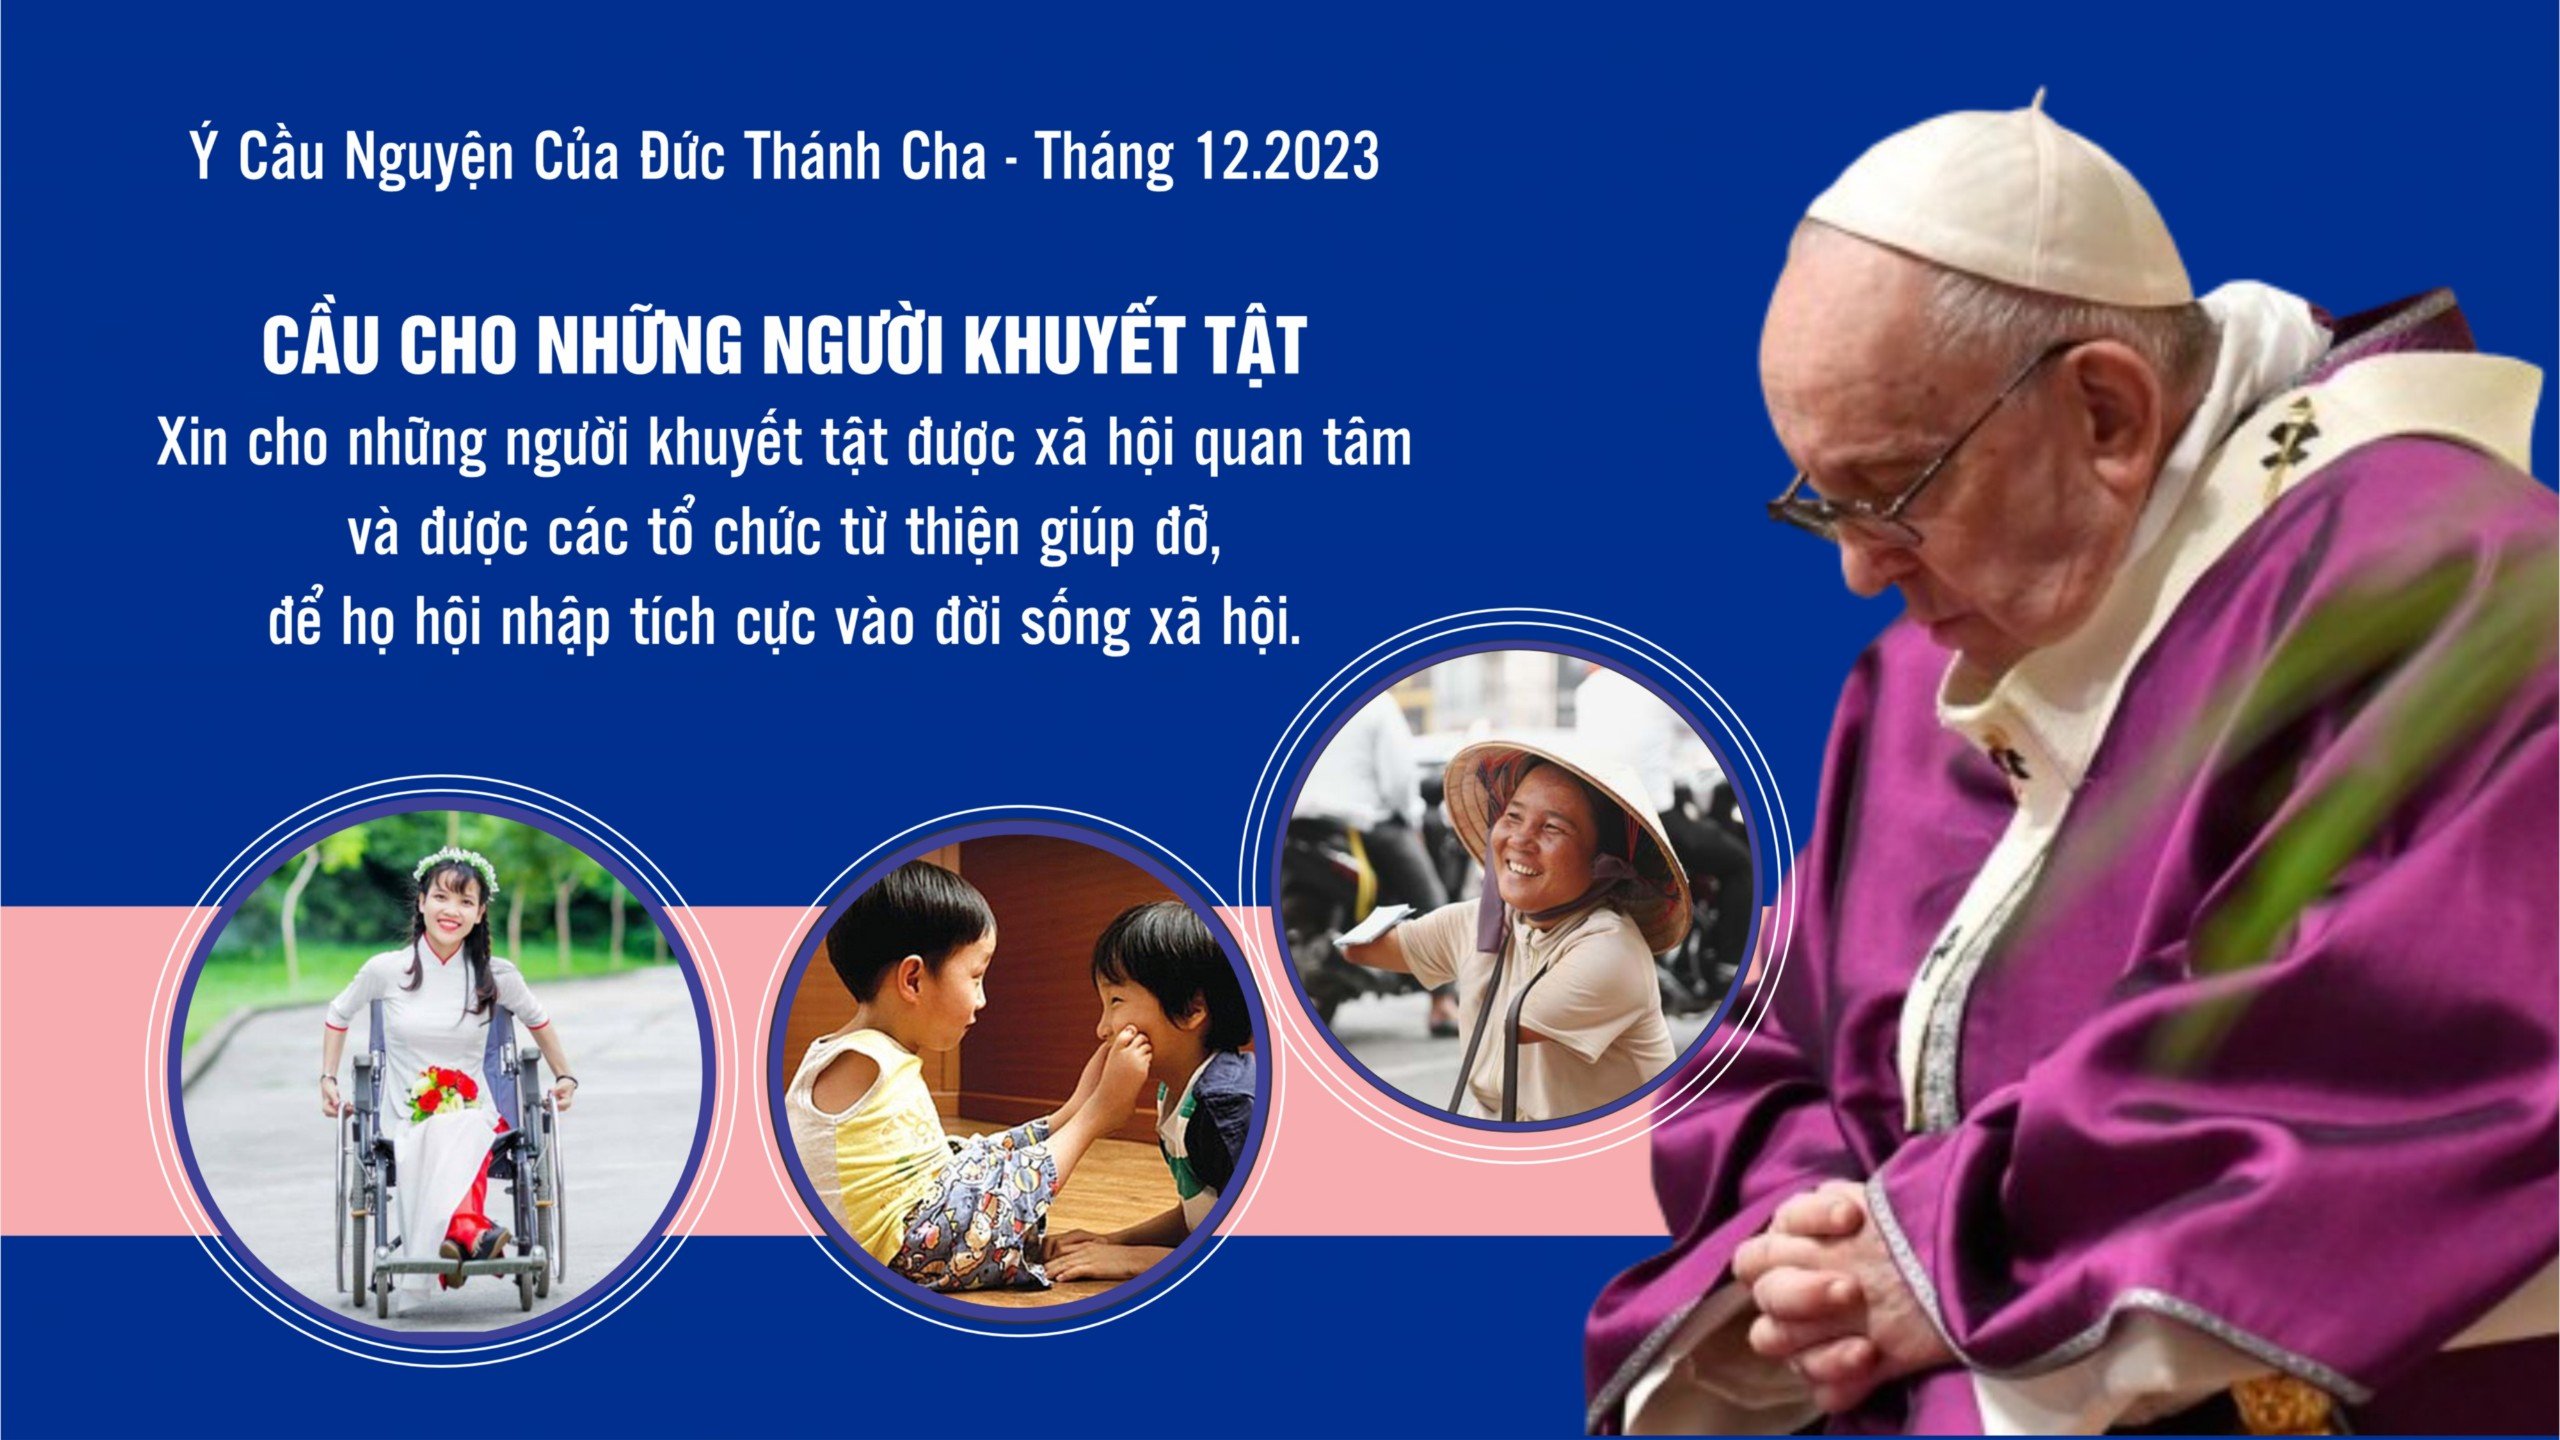 Ý cầu nguyện của Đức Thánh Cha tháng 12/2023: Cầu nguyện cho người khuyết tật